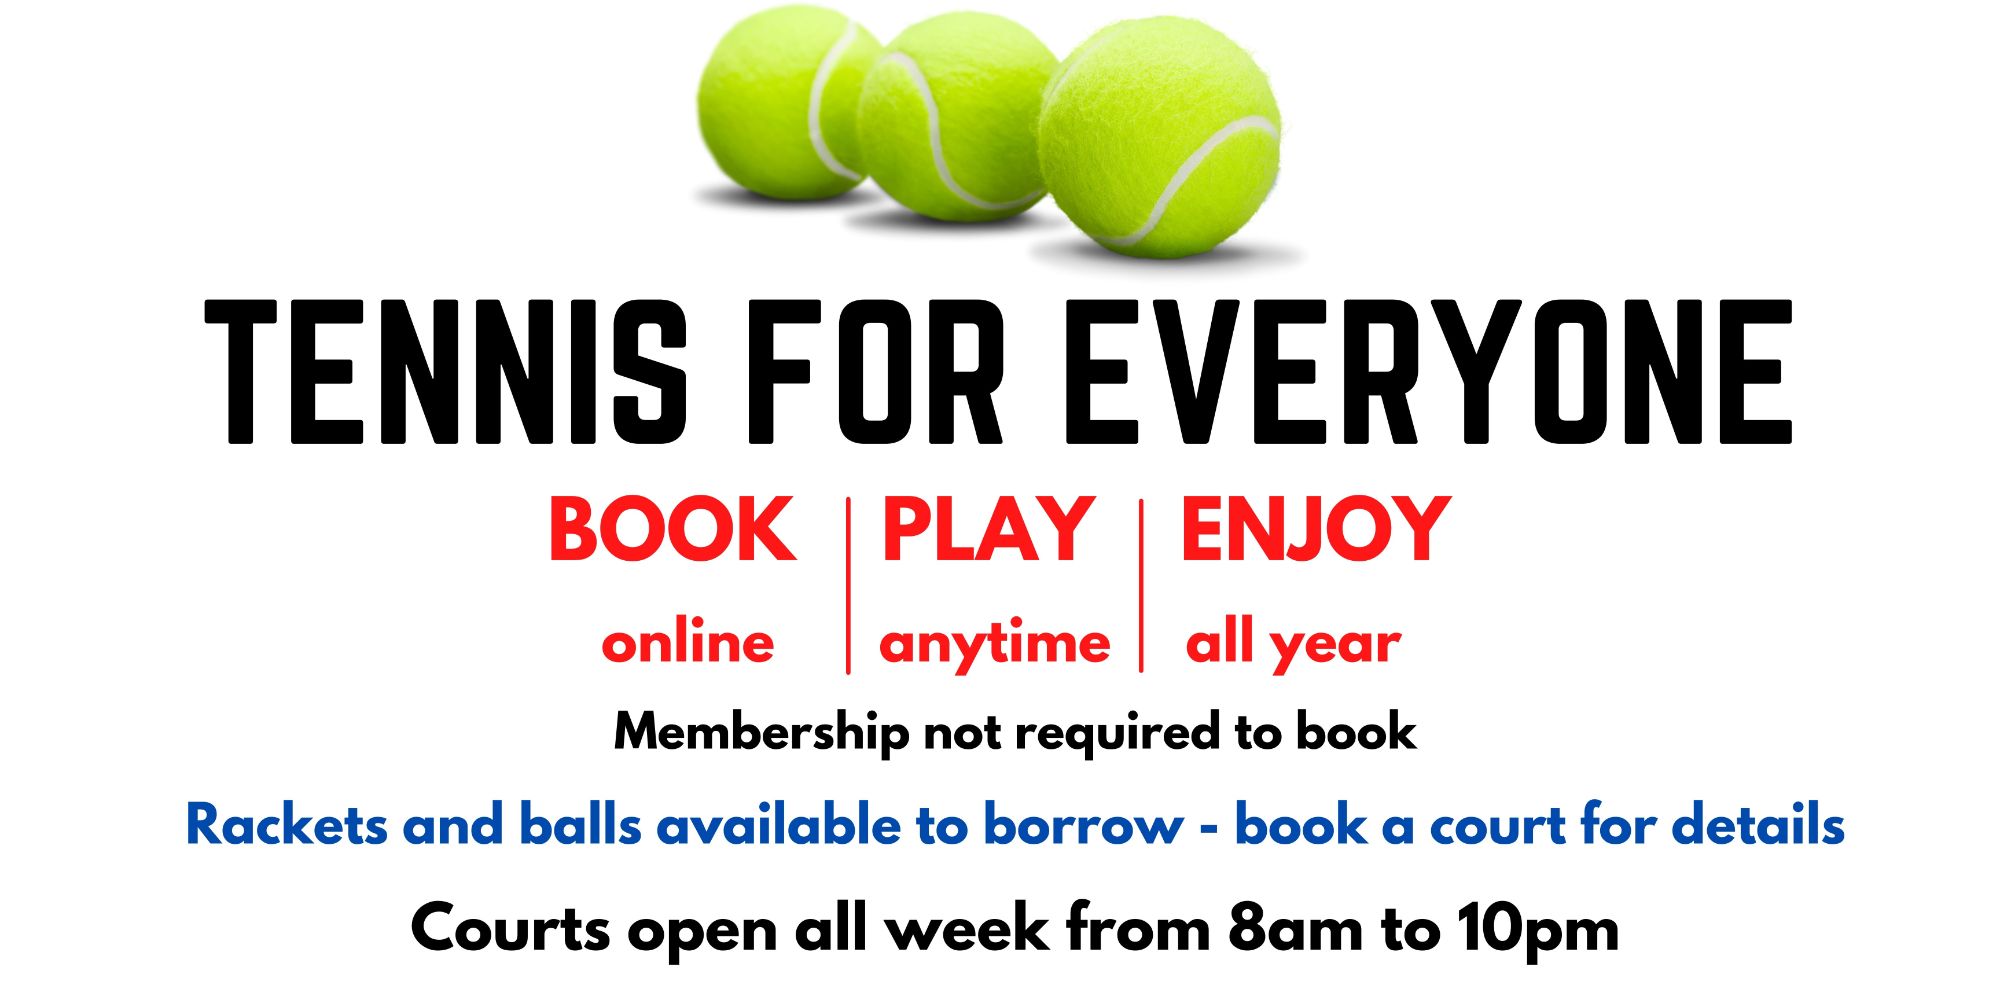 Tennis for Everyone - No Logo